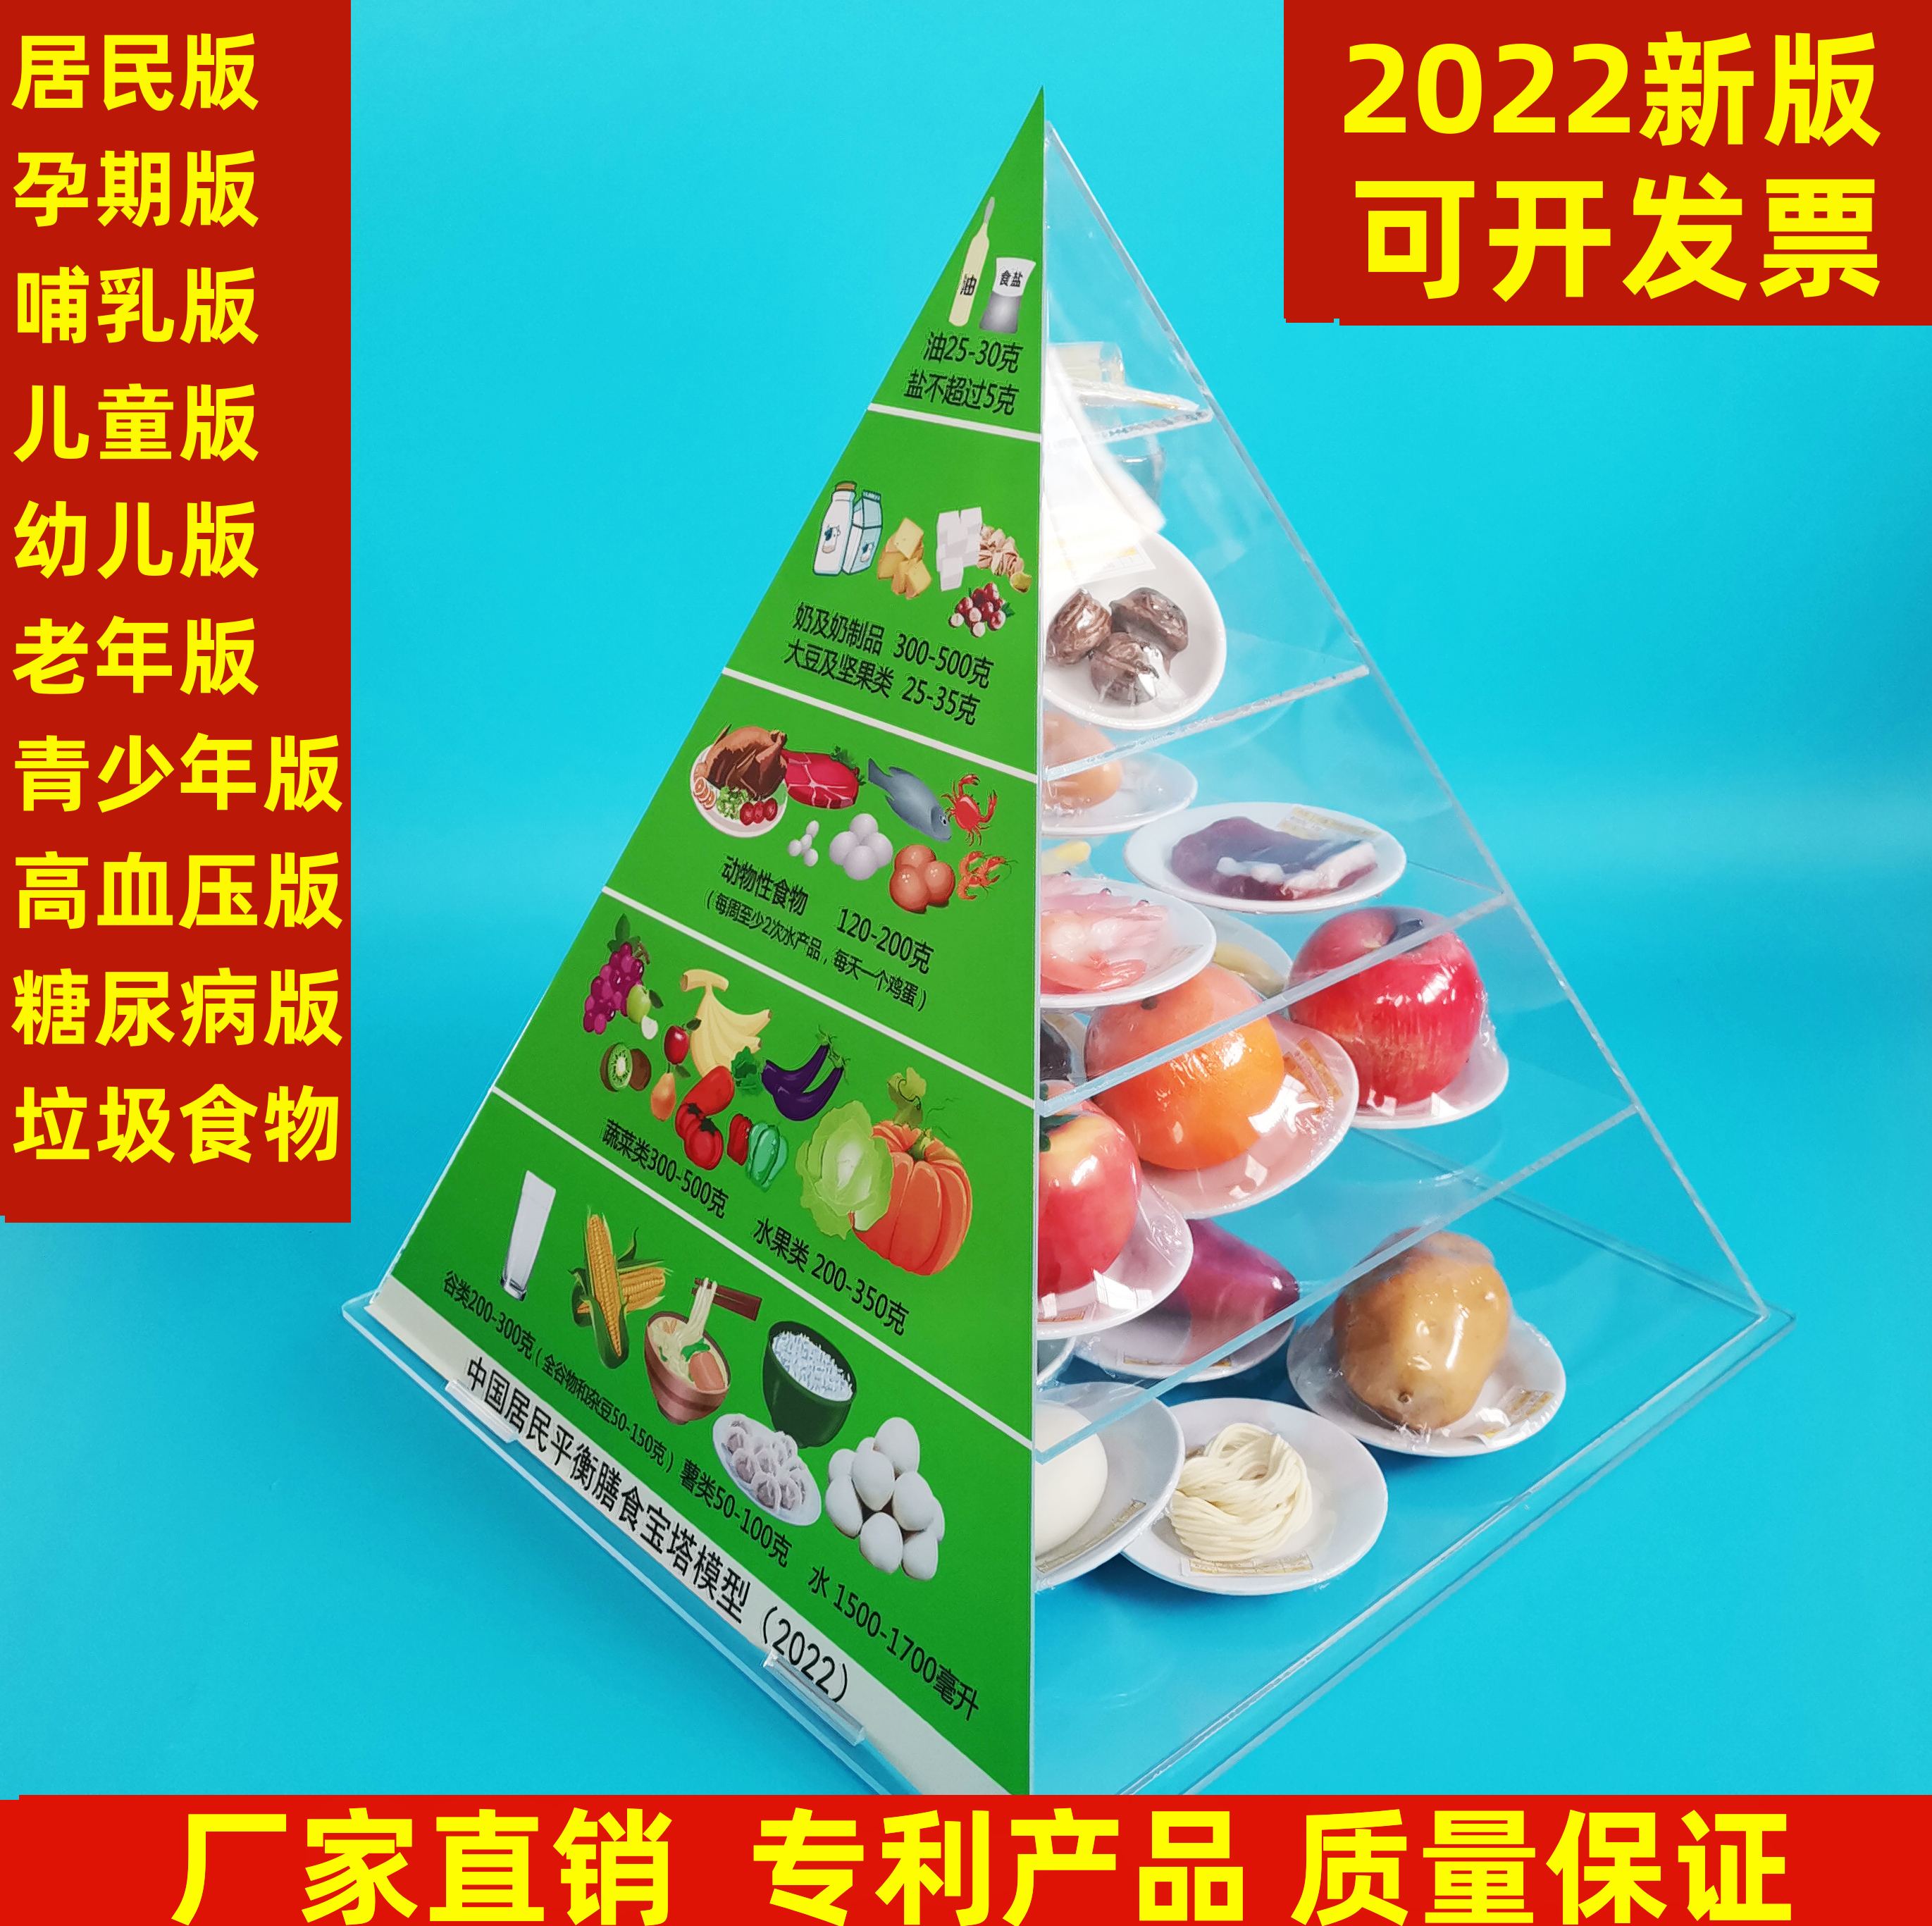 2022版膳食宝塔中国居民膳食平衡宝塔食物膳食金字塔营养食物模型